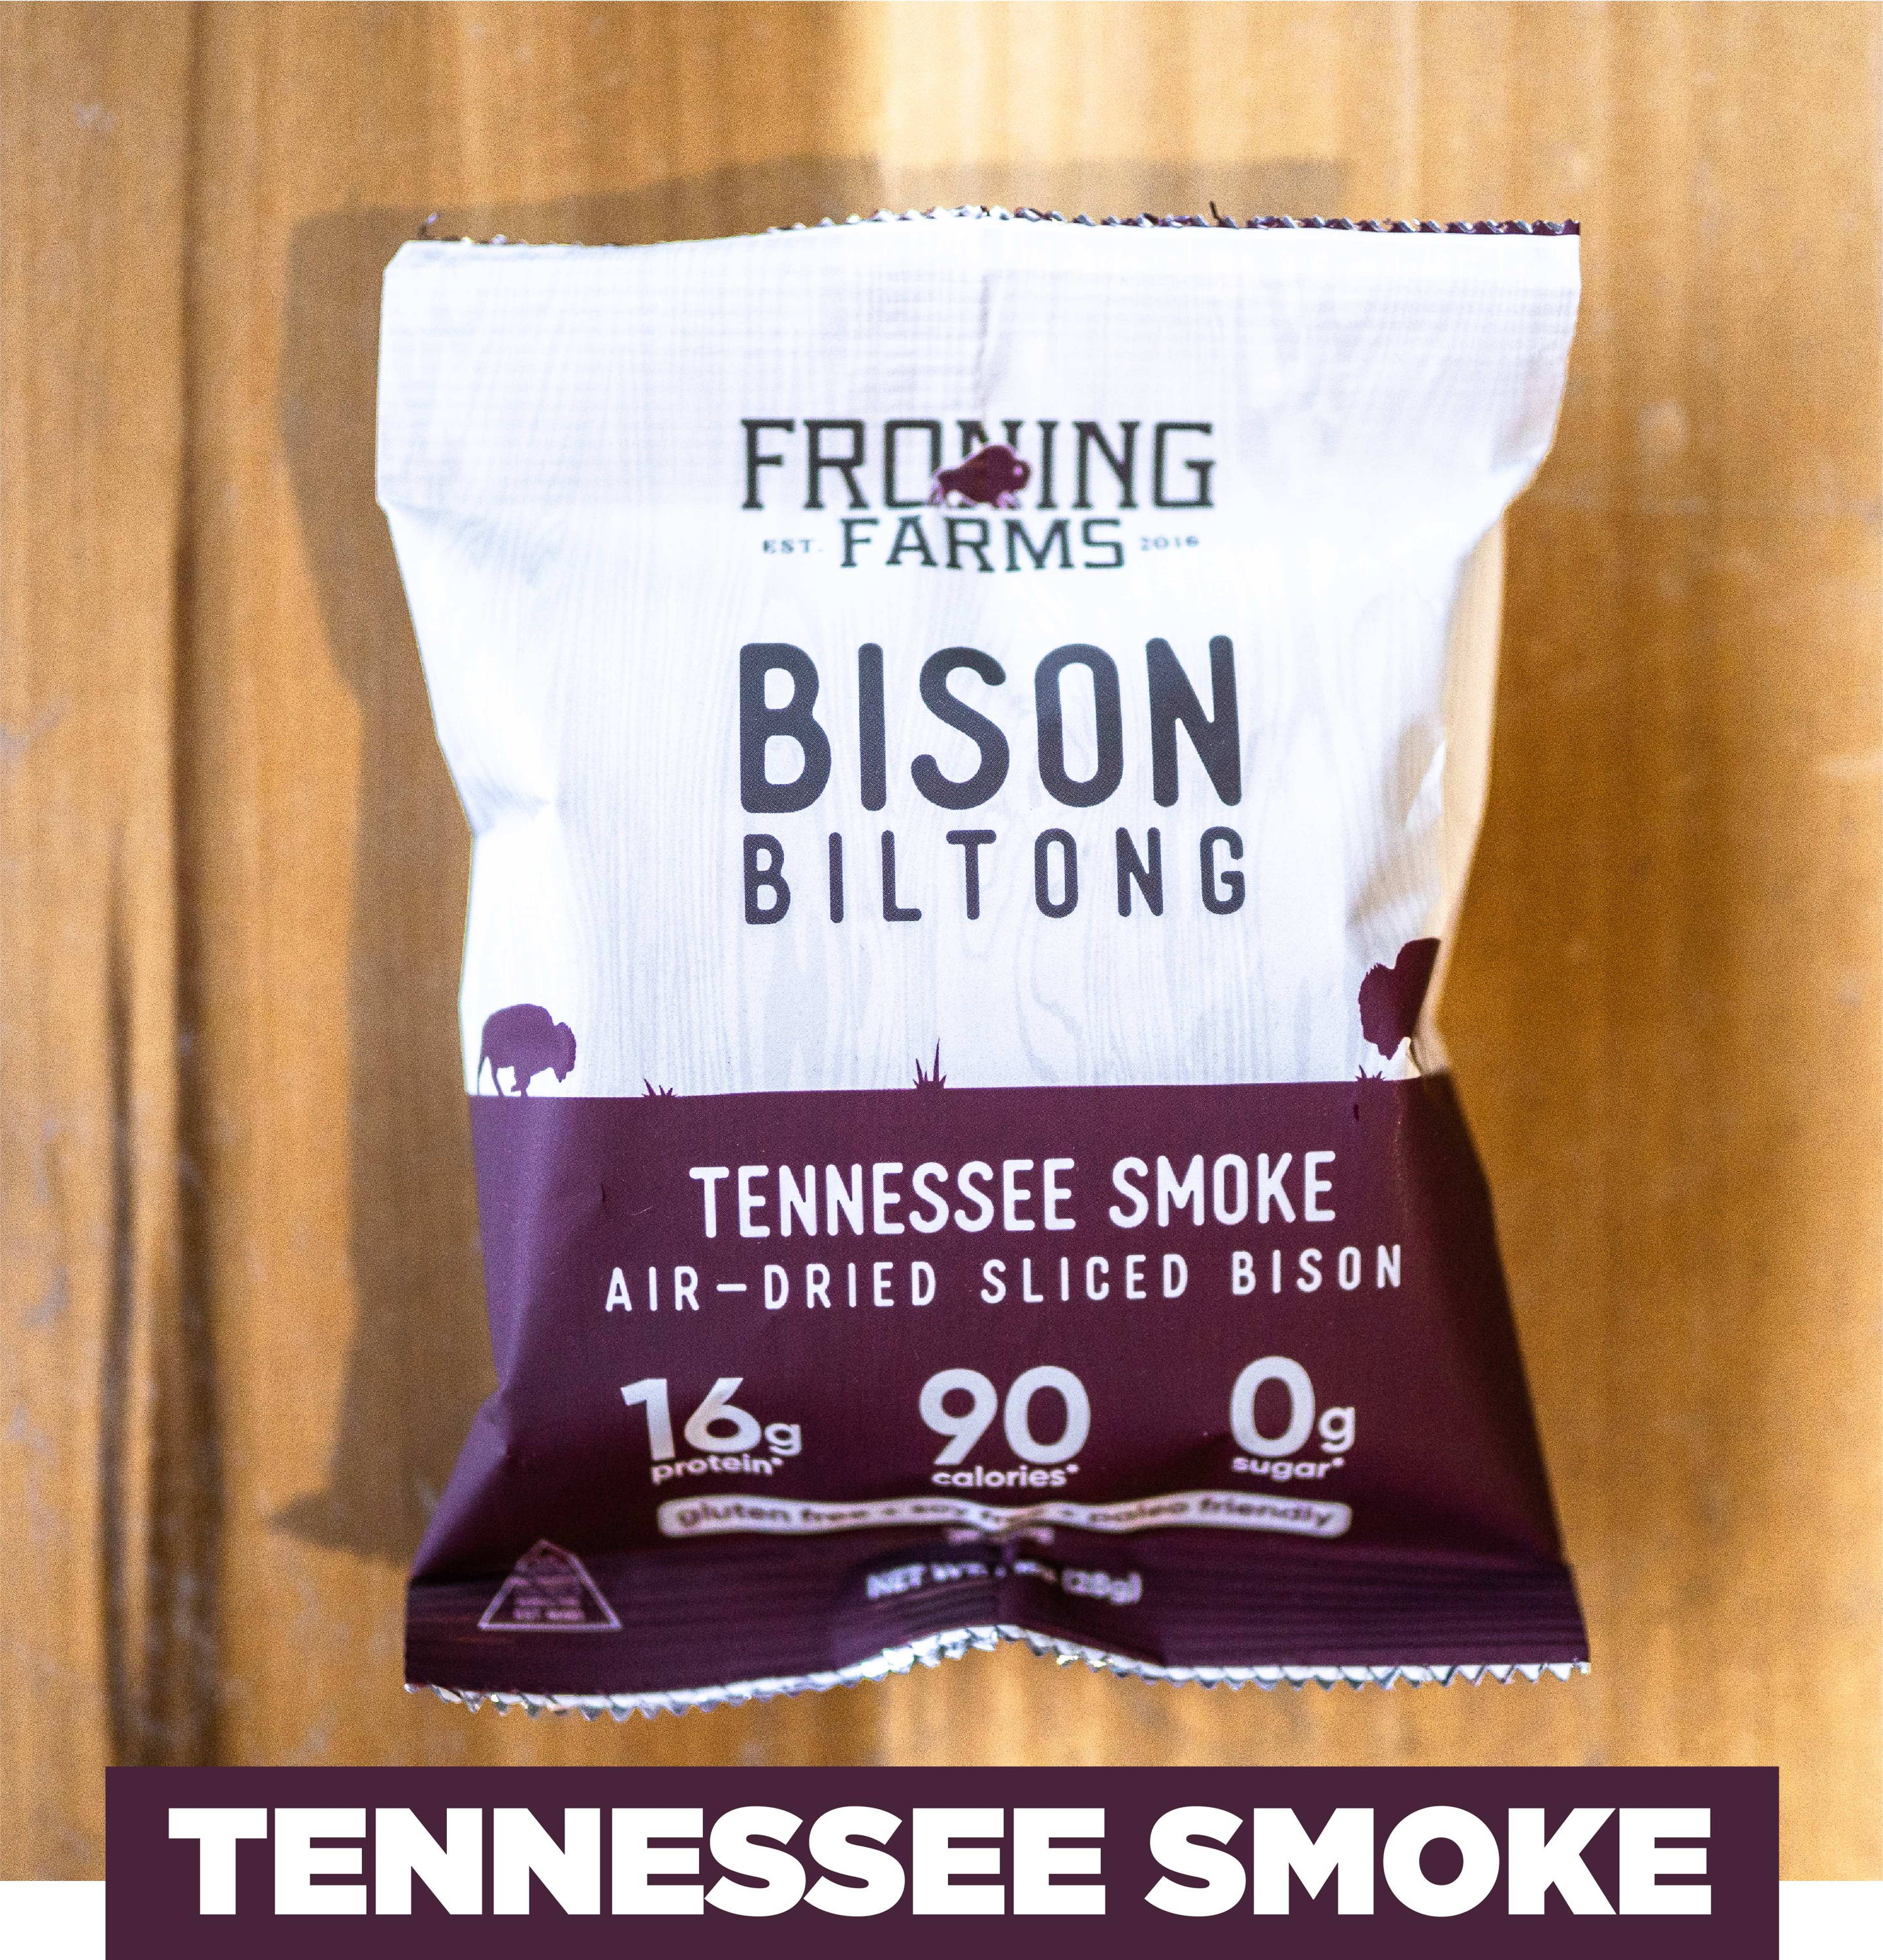 bison biltong tennesse smoke froning farms